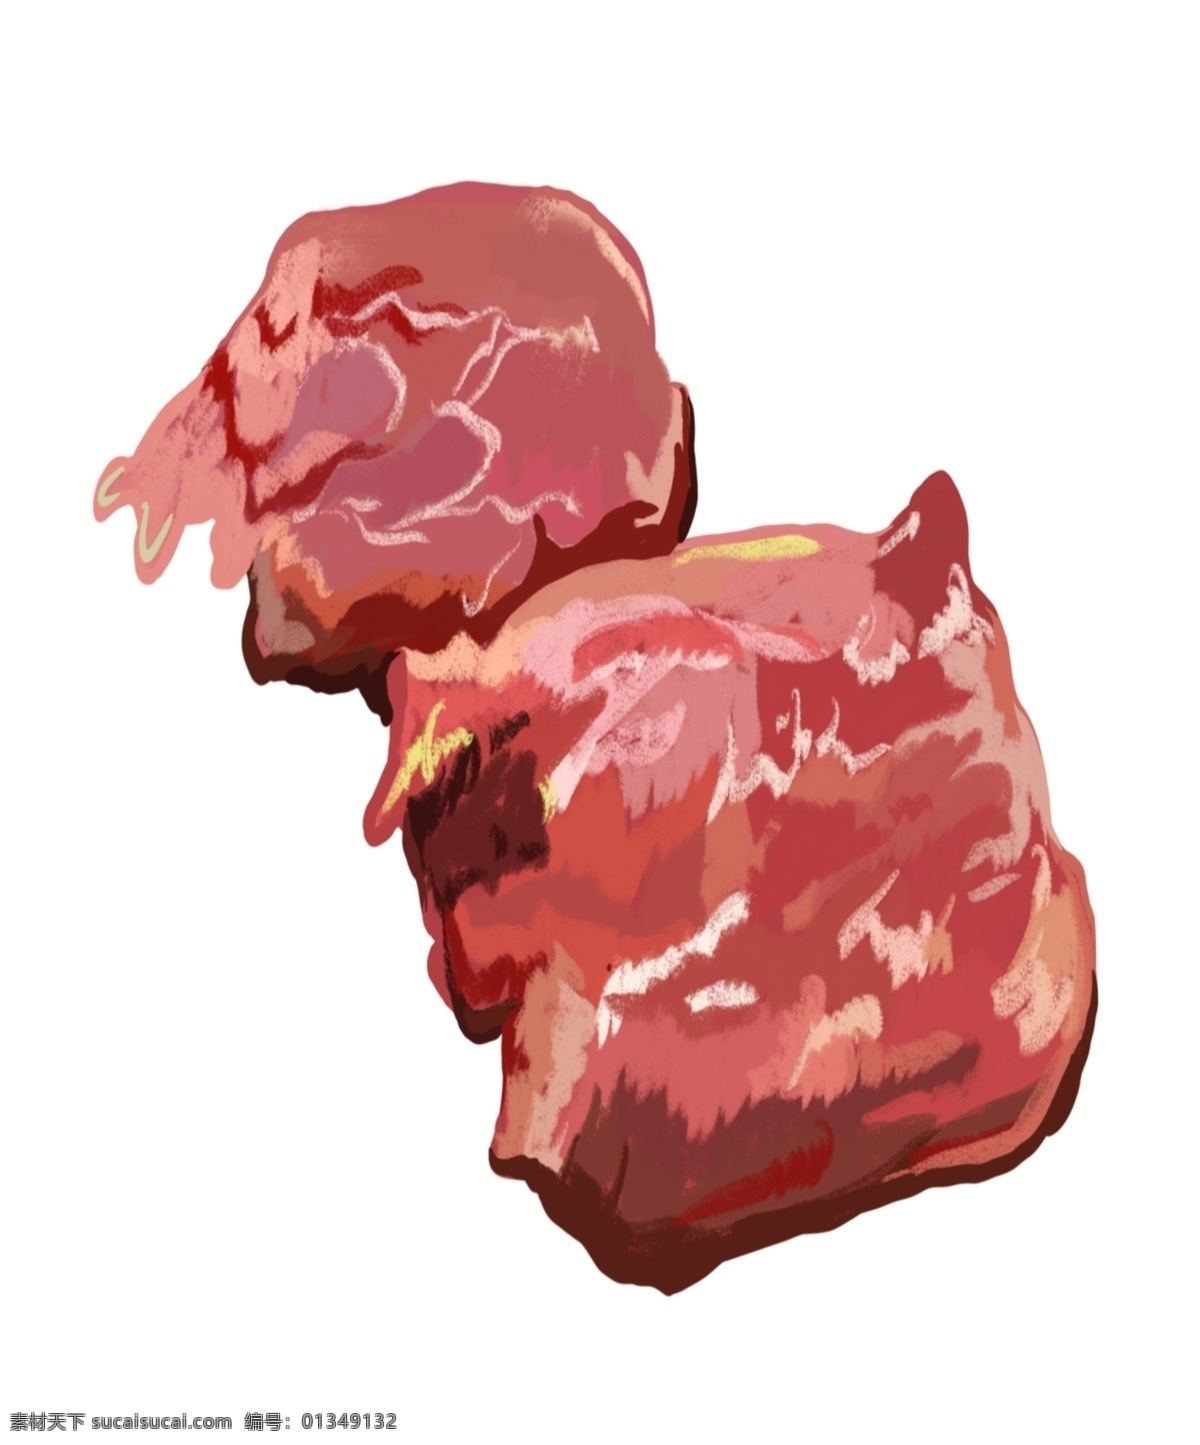 美味 羊肉 烧烤 插画 羊肉的烤串 卡通插画 烧烤插画 烤串插画 烤肉插画 蔬菜烧烤 红色的羊肉